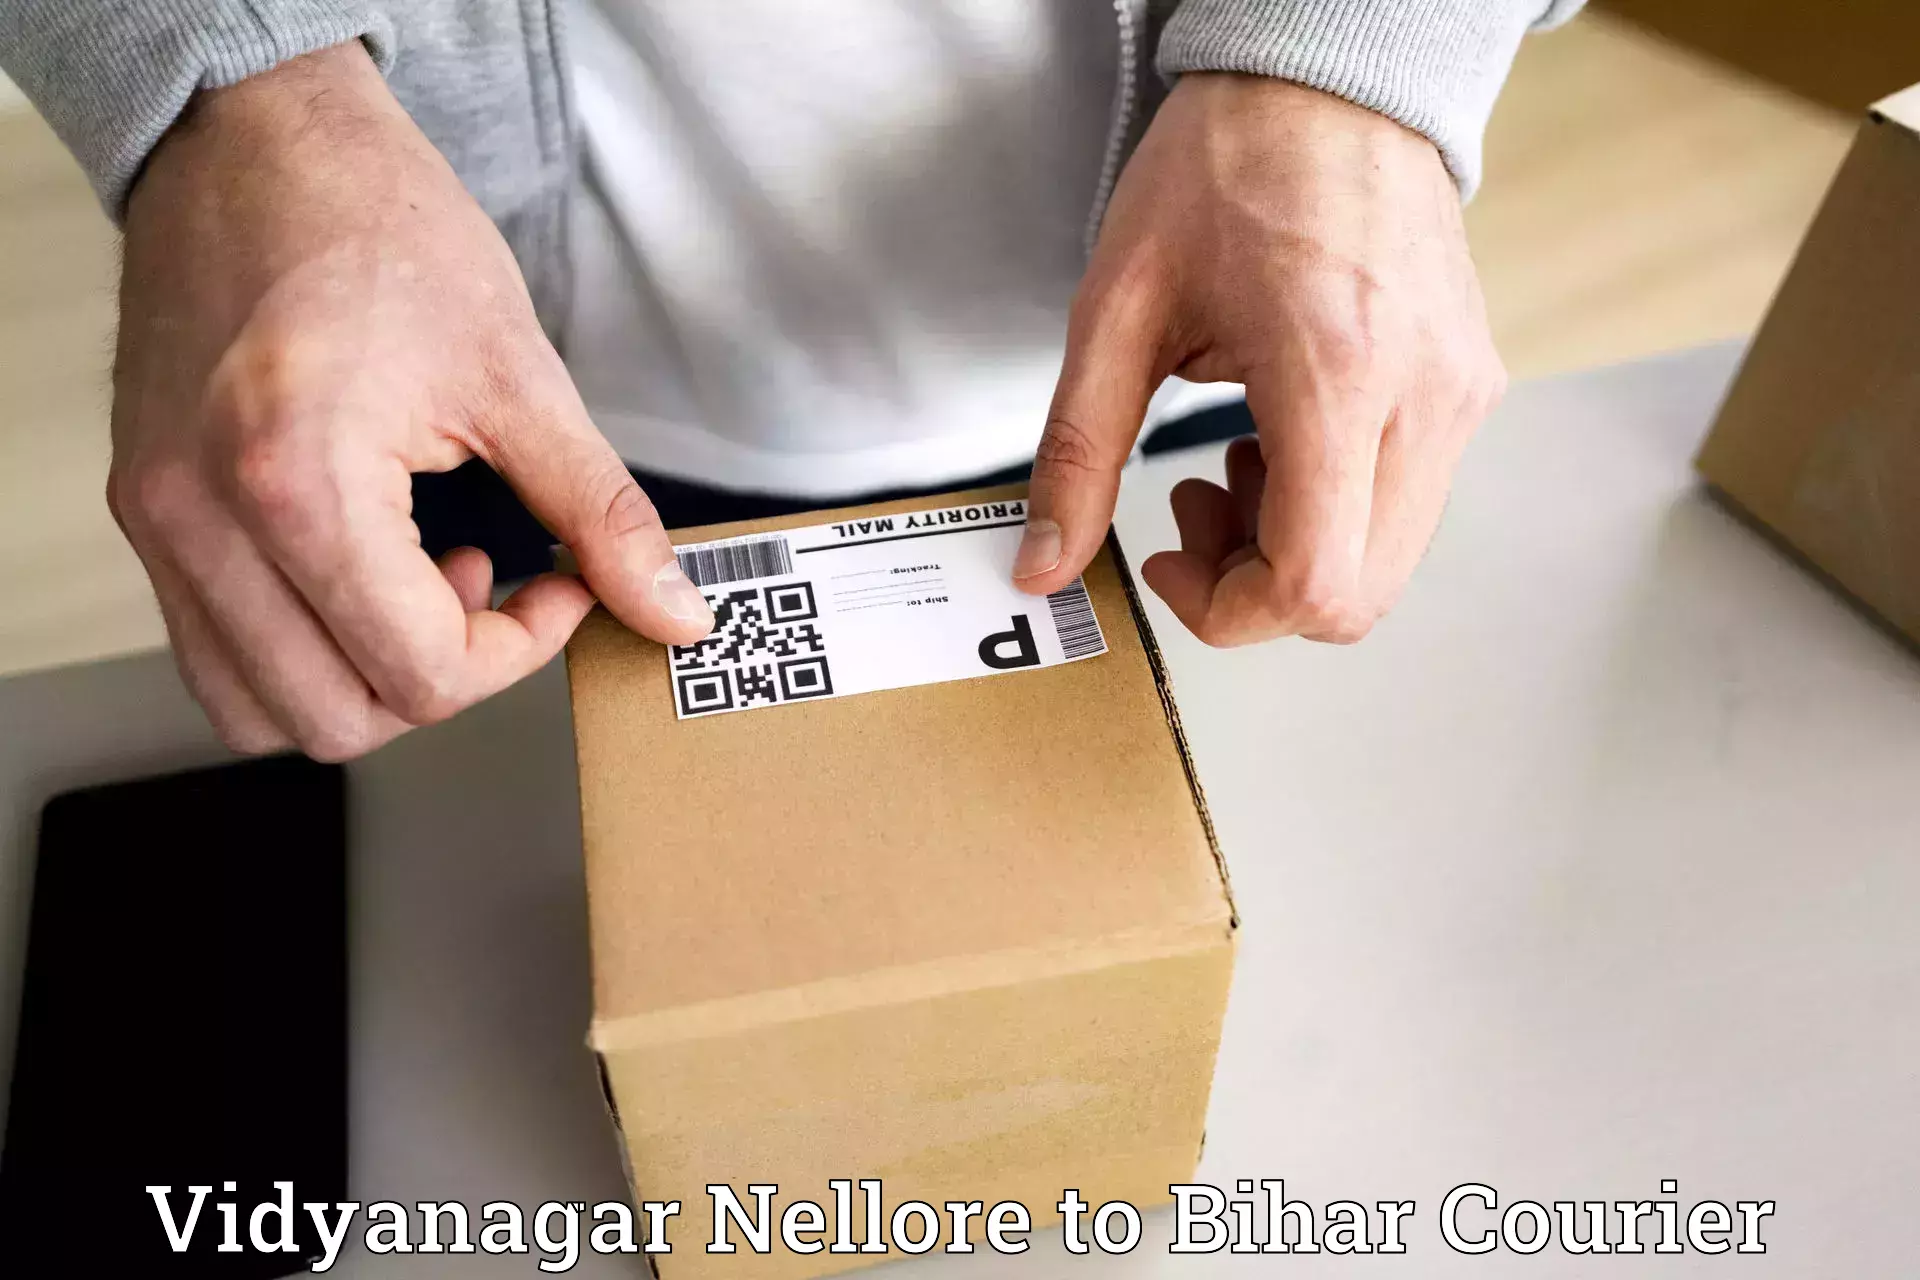 International courier networks Vidyanagar Nellore to Hasanpura